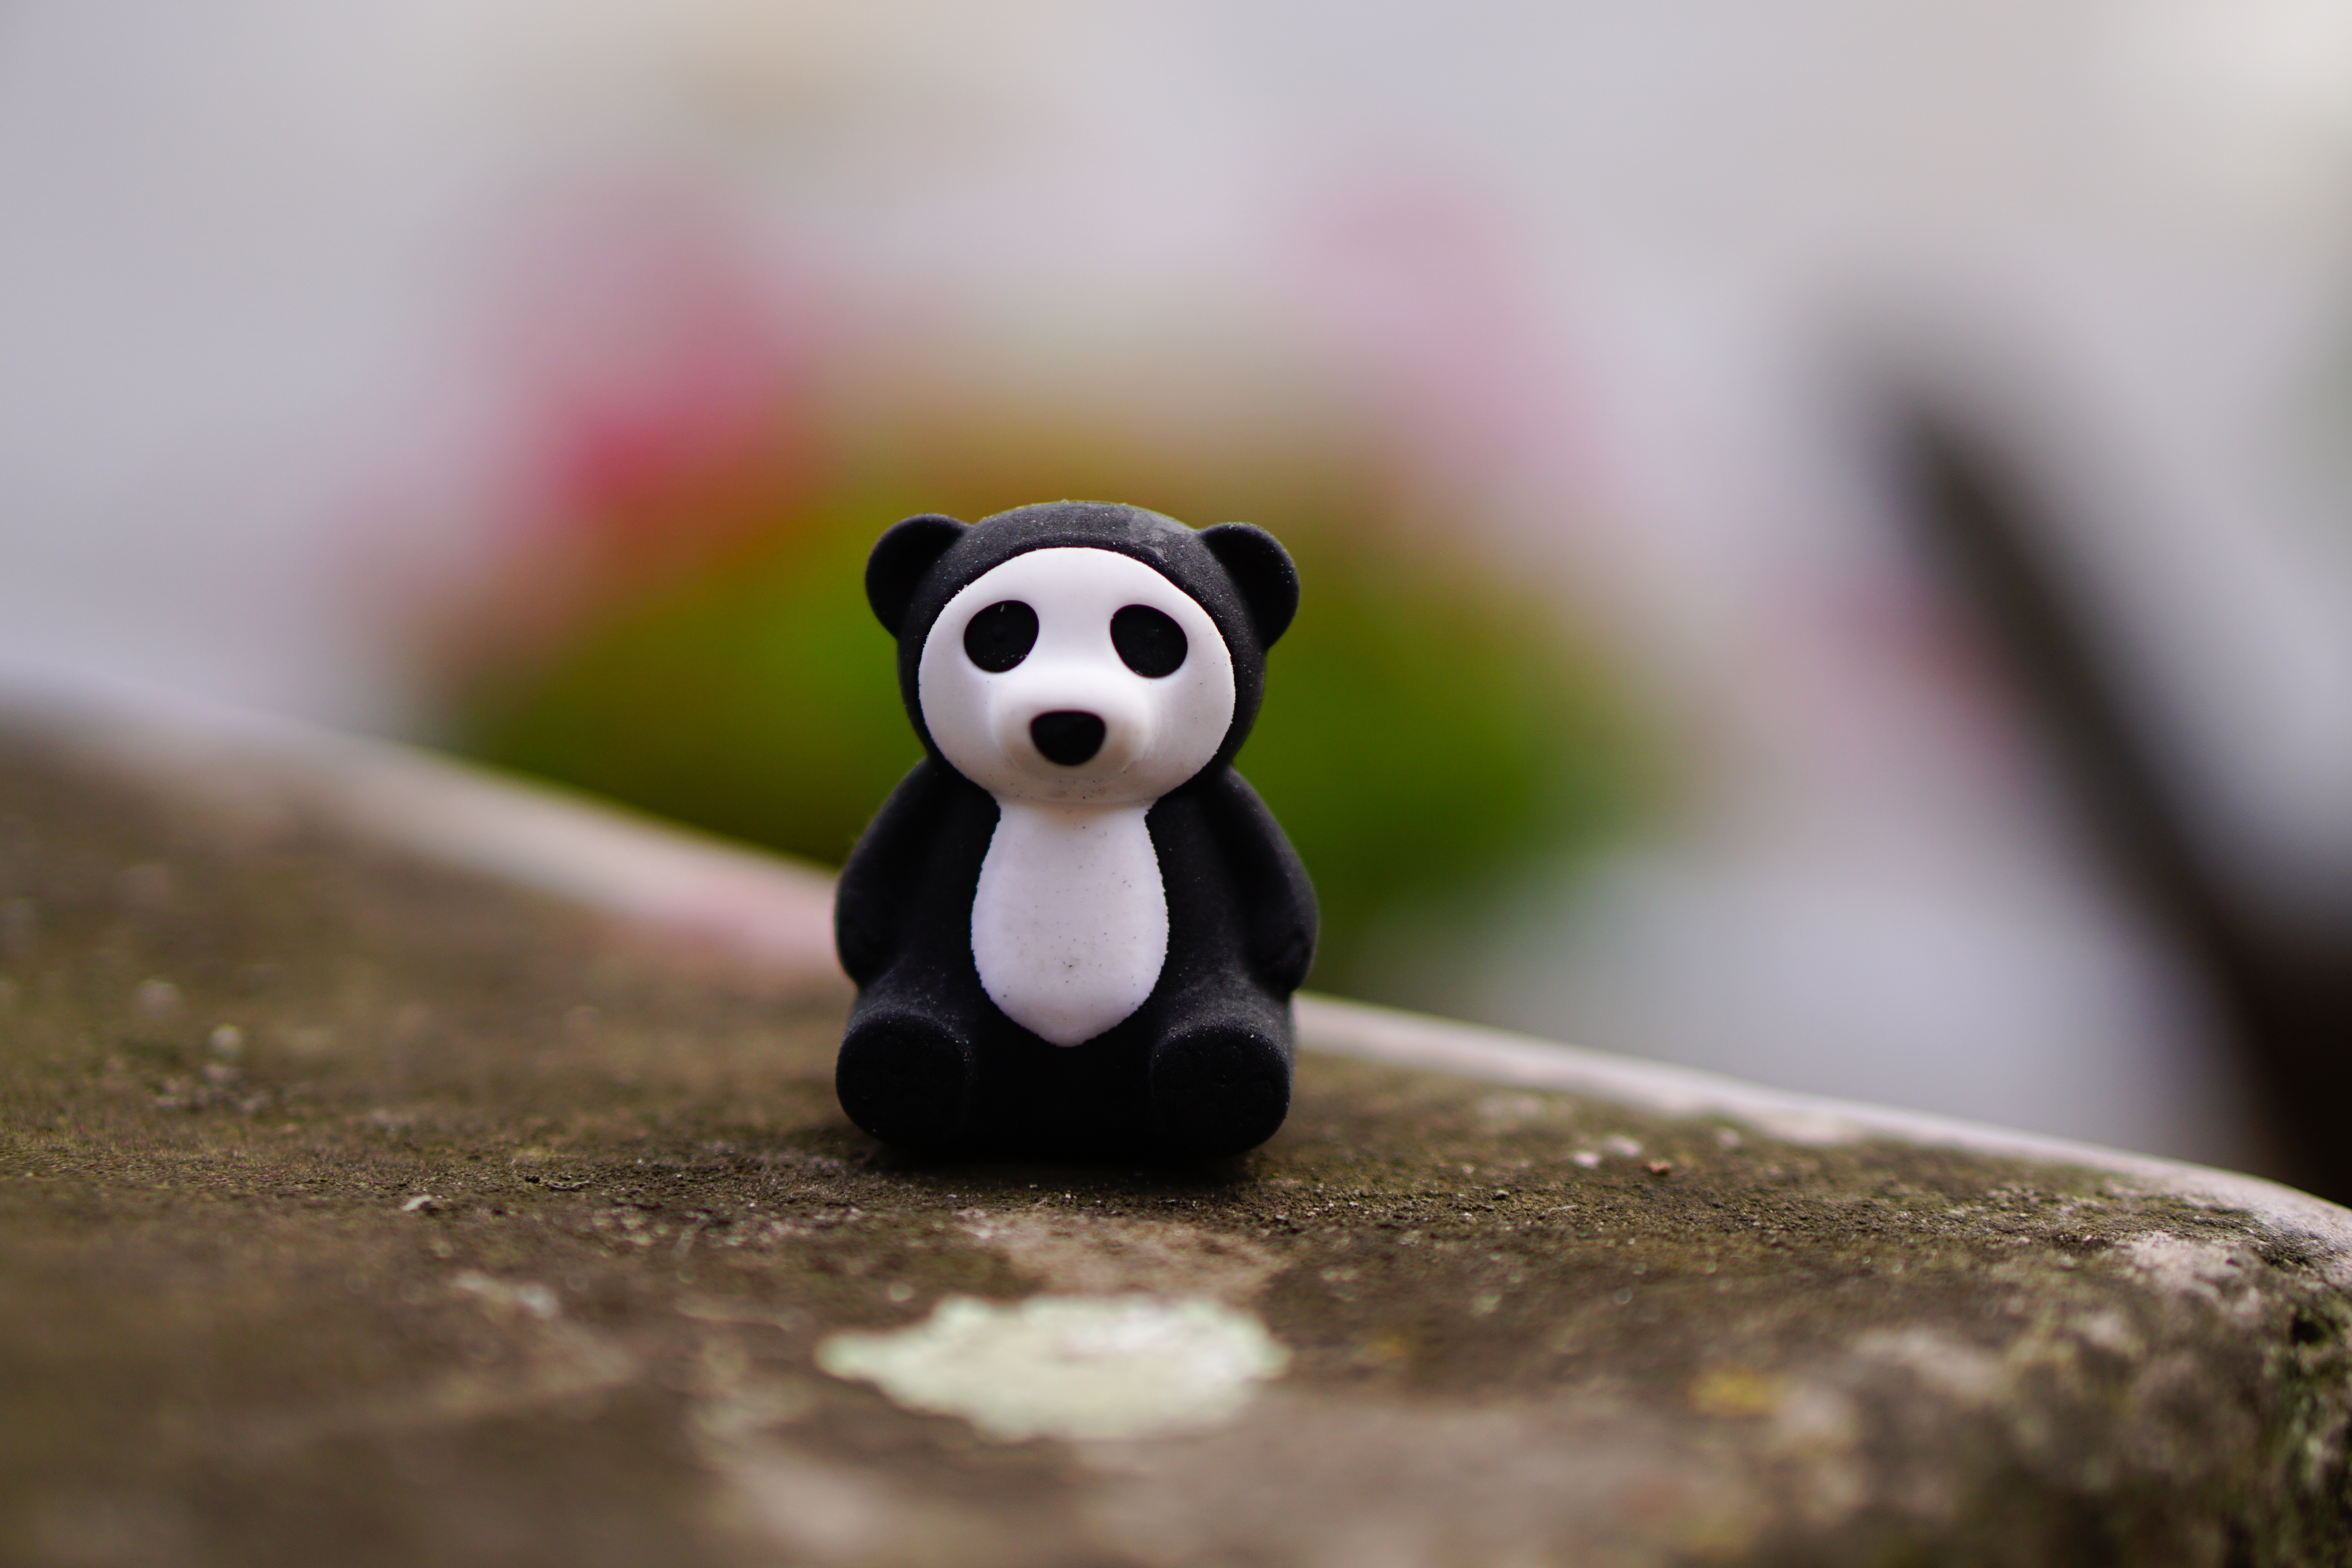 panda, miscellanea, miscellaneous, toy, statuette